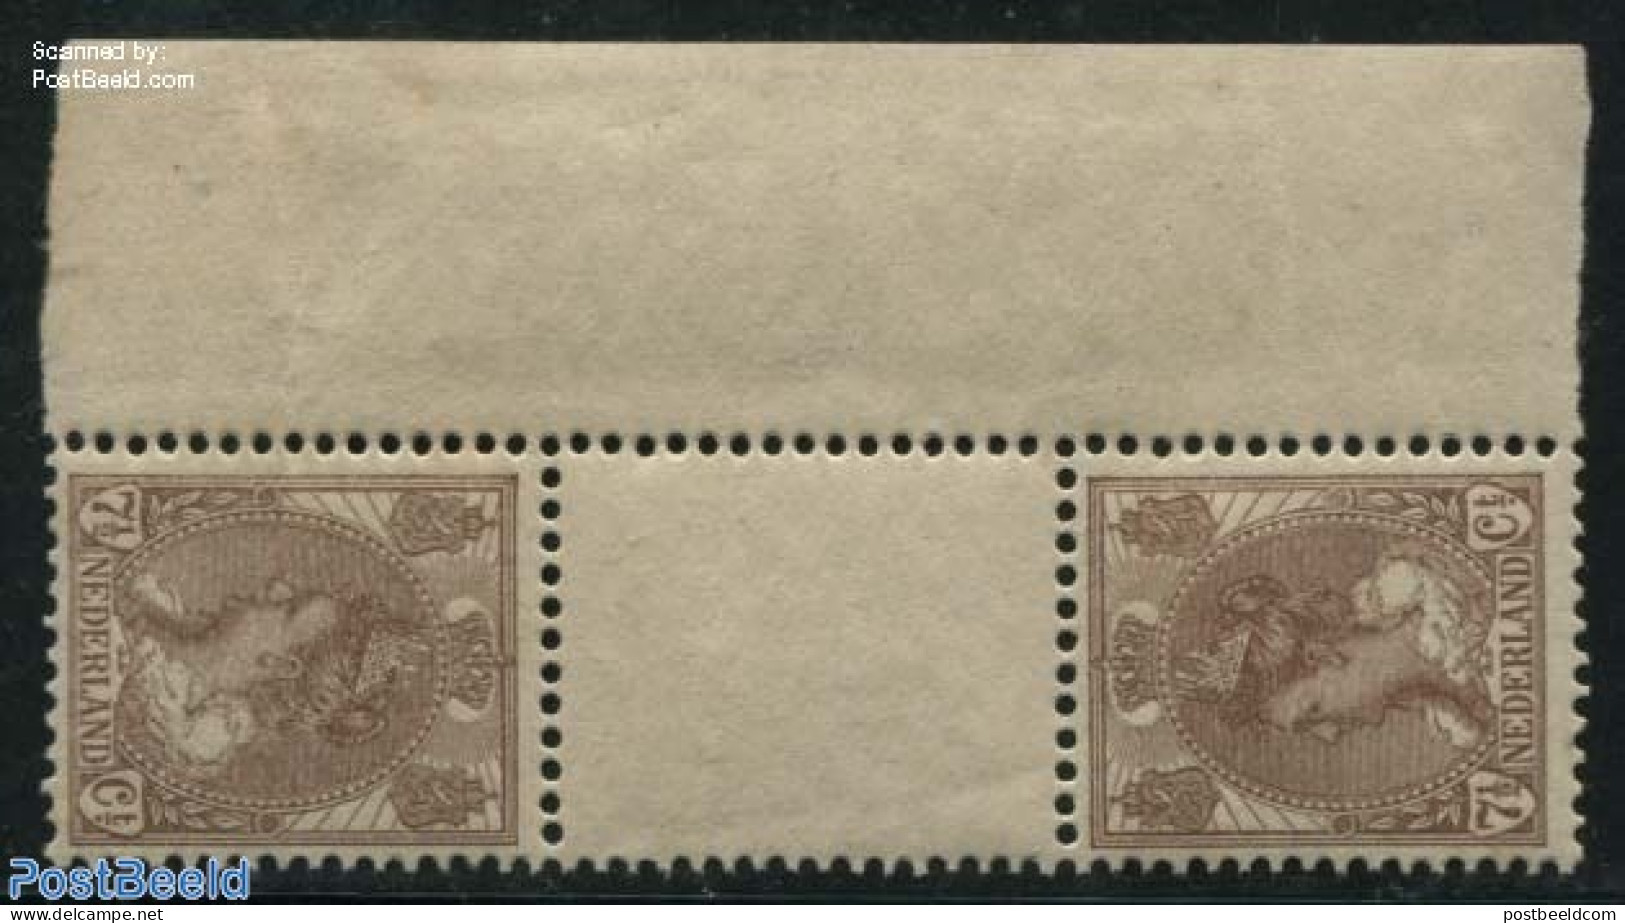 Netherlands 1924 7.5c Tete Beche Gutterpair (hinge On Right Sheet Margin), Mint NH - Ongebruikt